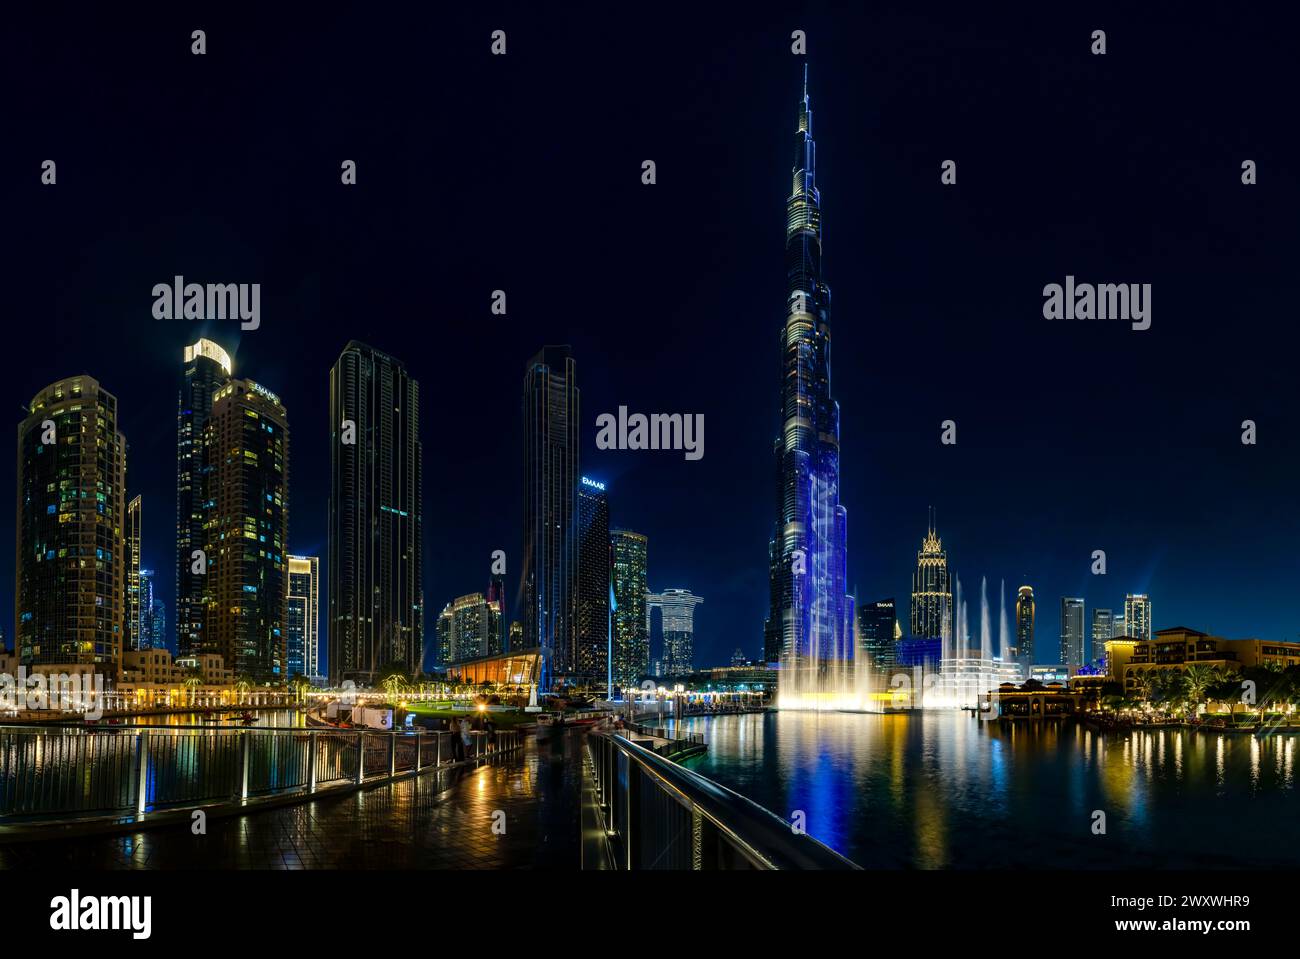 Una imagen del icónico Burj Khalifa con el Dubai Fountain Show, y los edificios del centro de Dubai y el lago Burj Khalifa, en la noche. Foto de stock